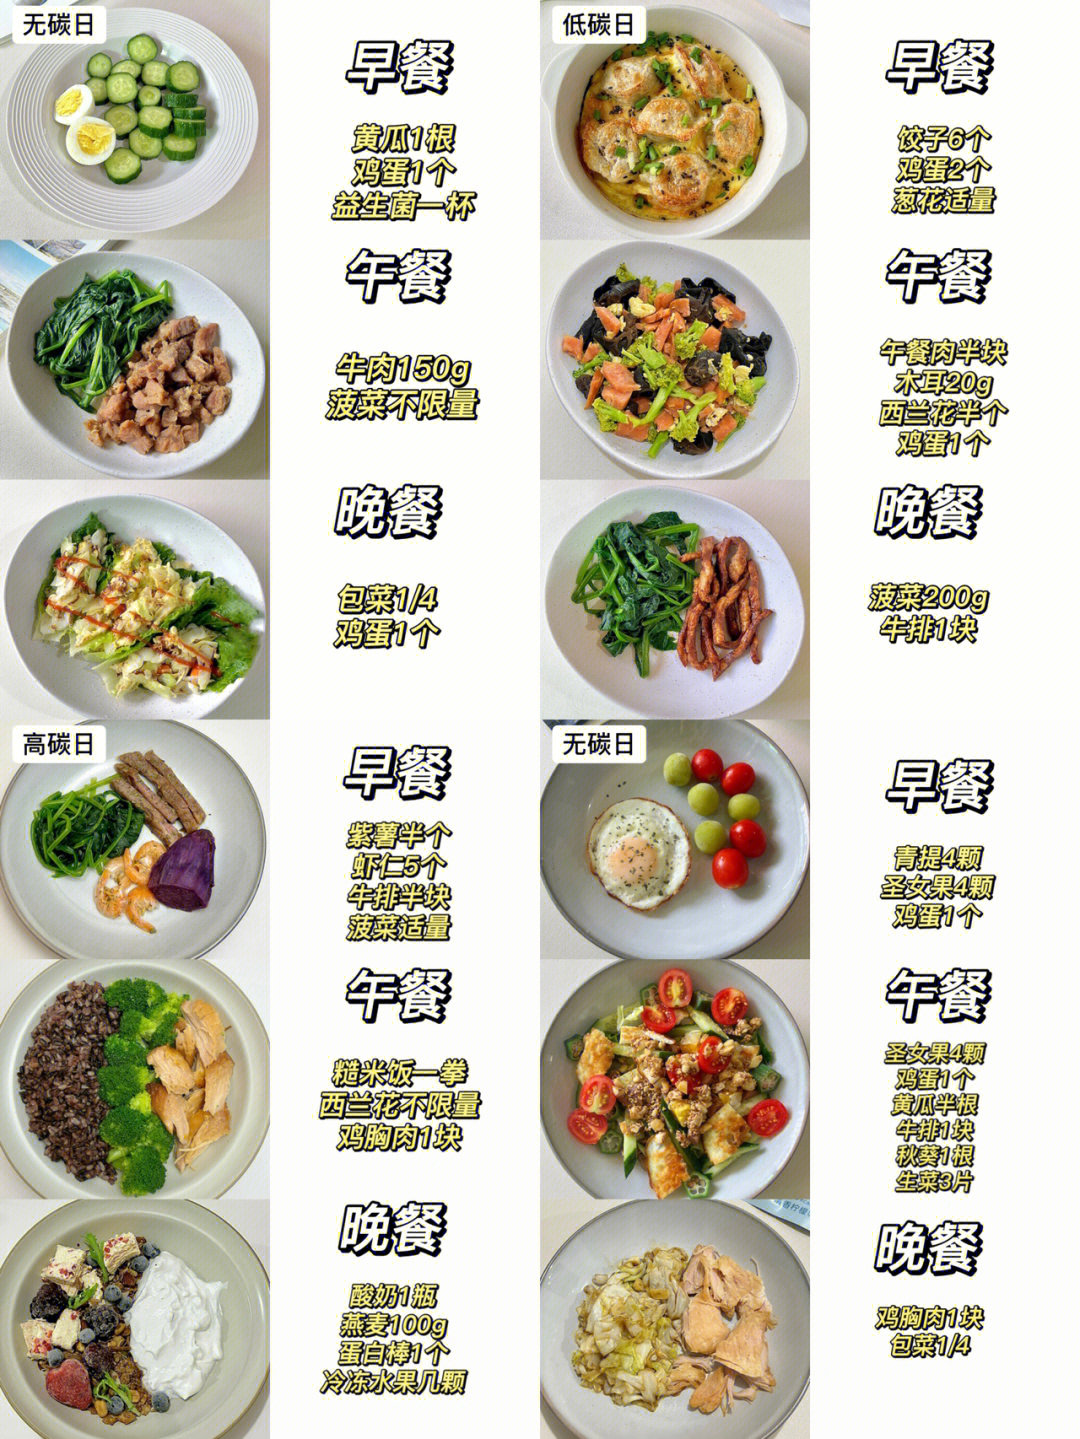 减脂餐食谱 一周七天图片